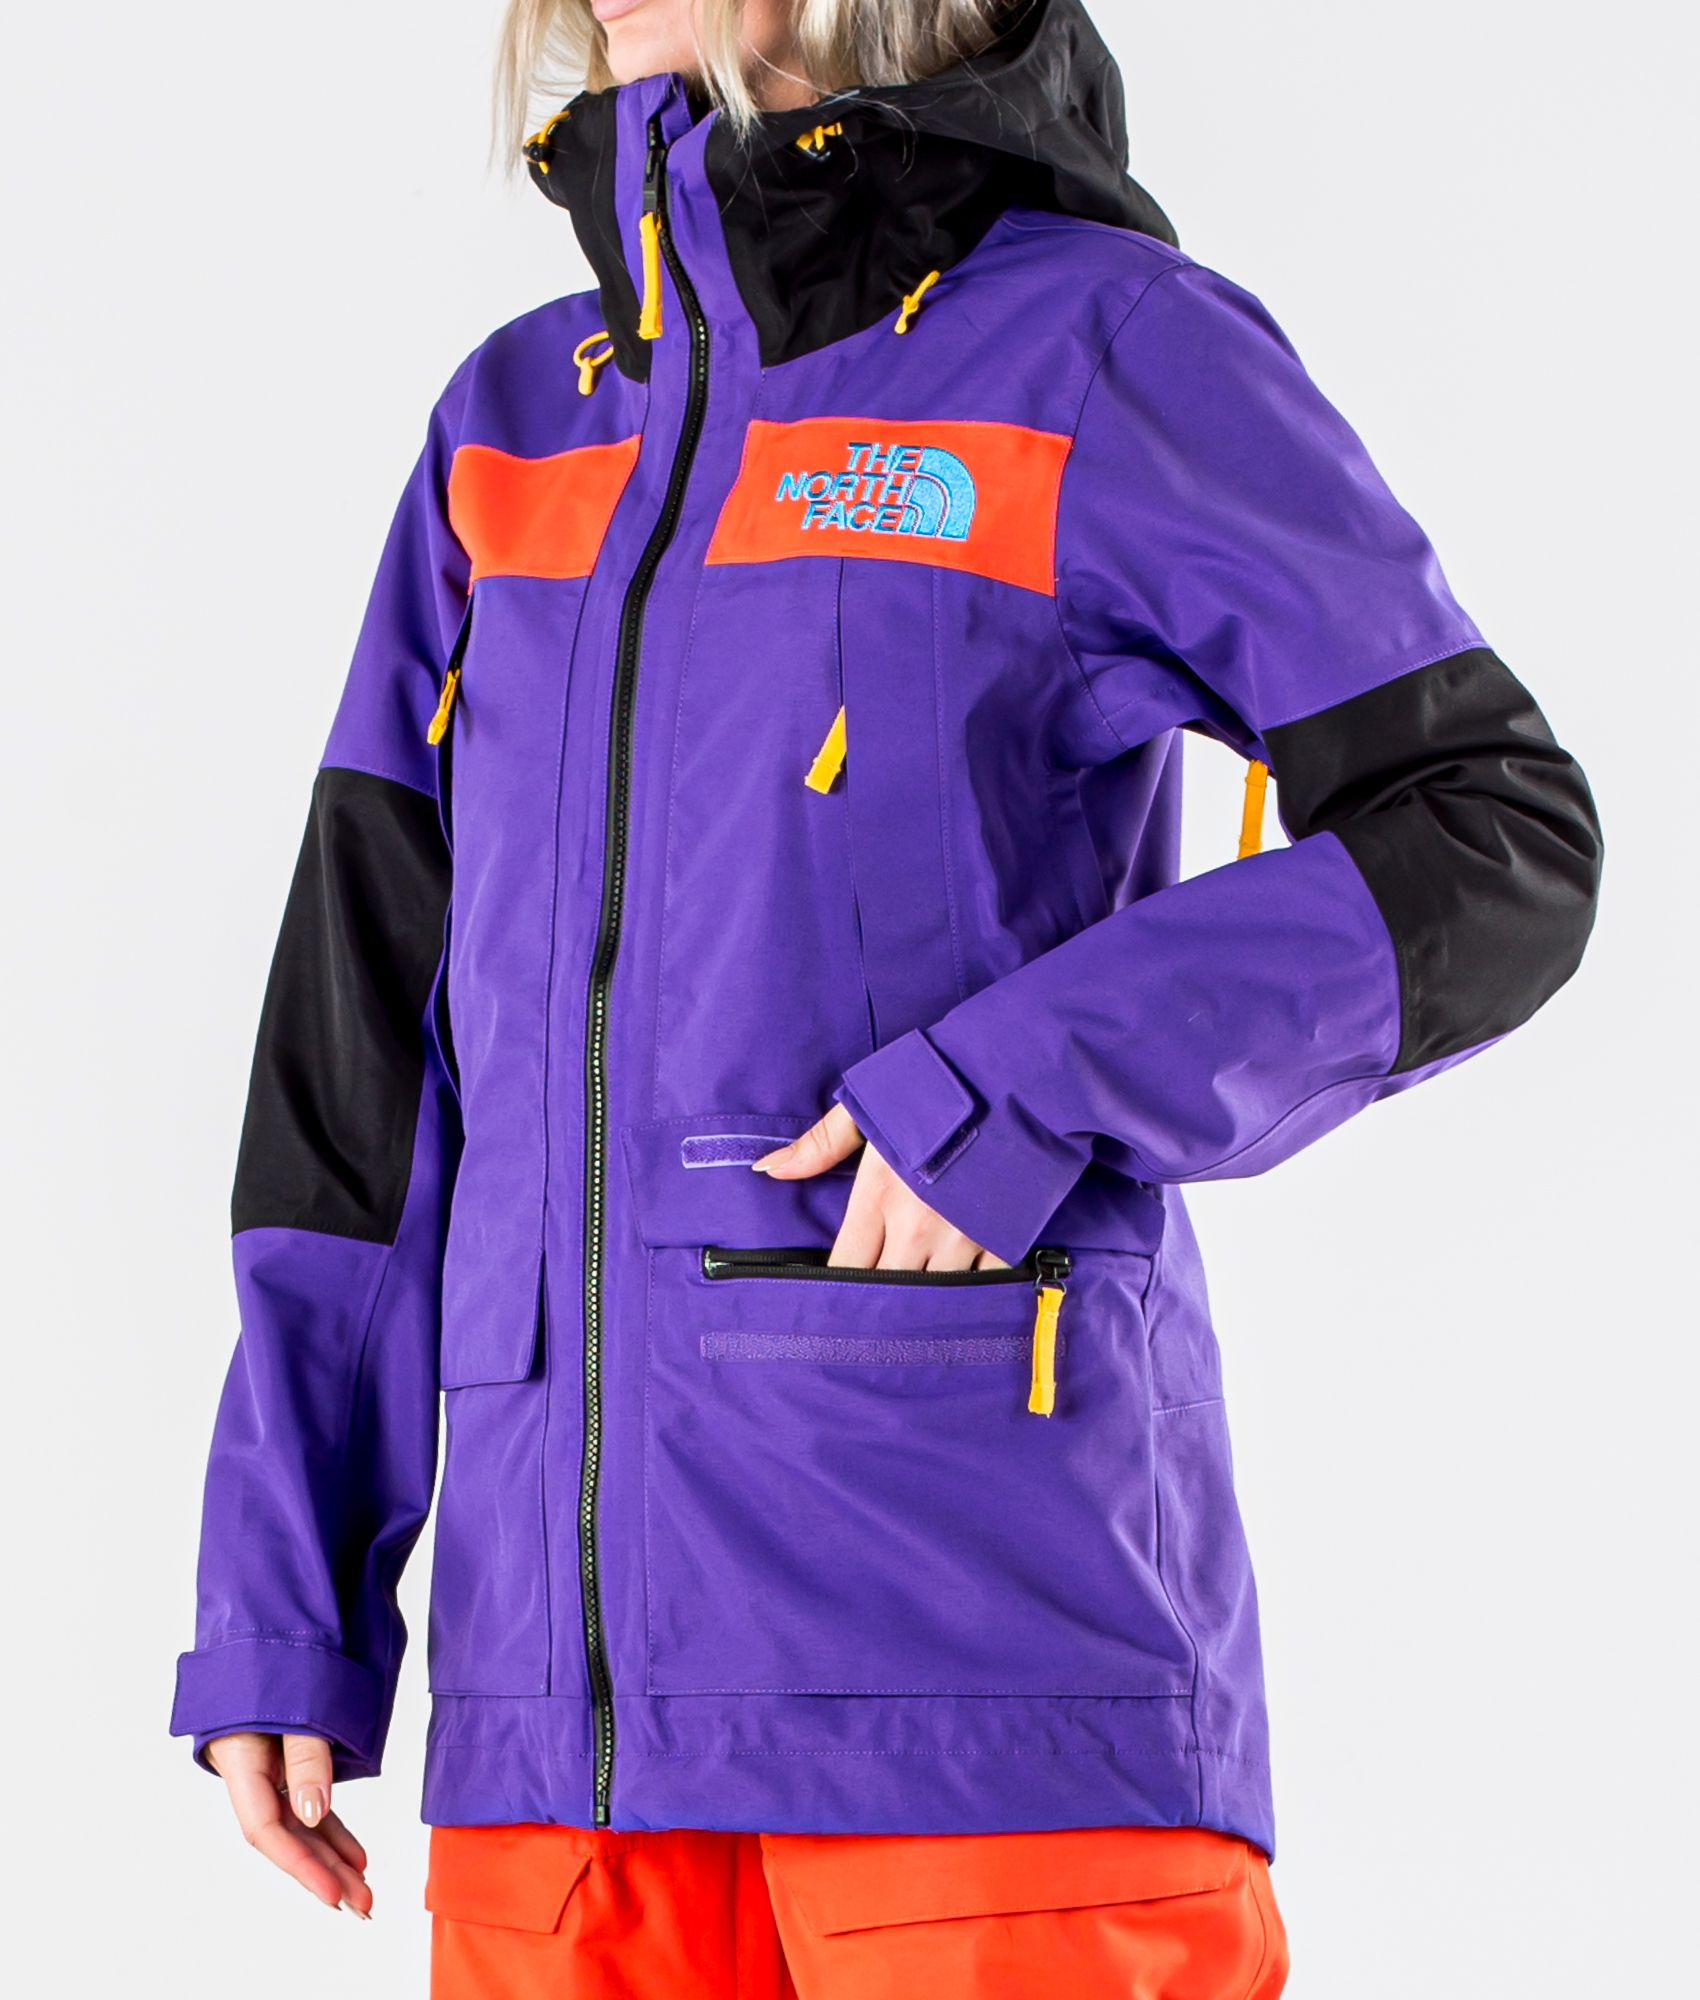 north face purple ski jacket